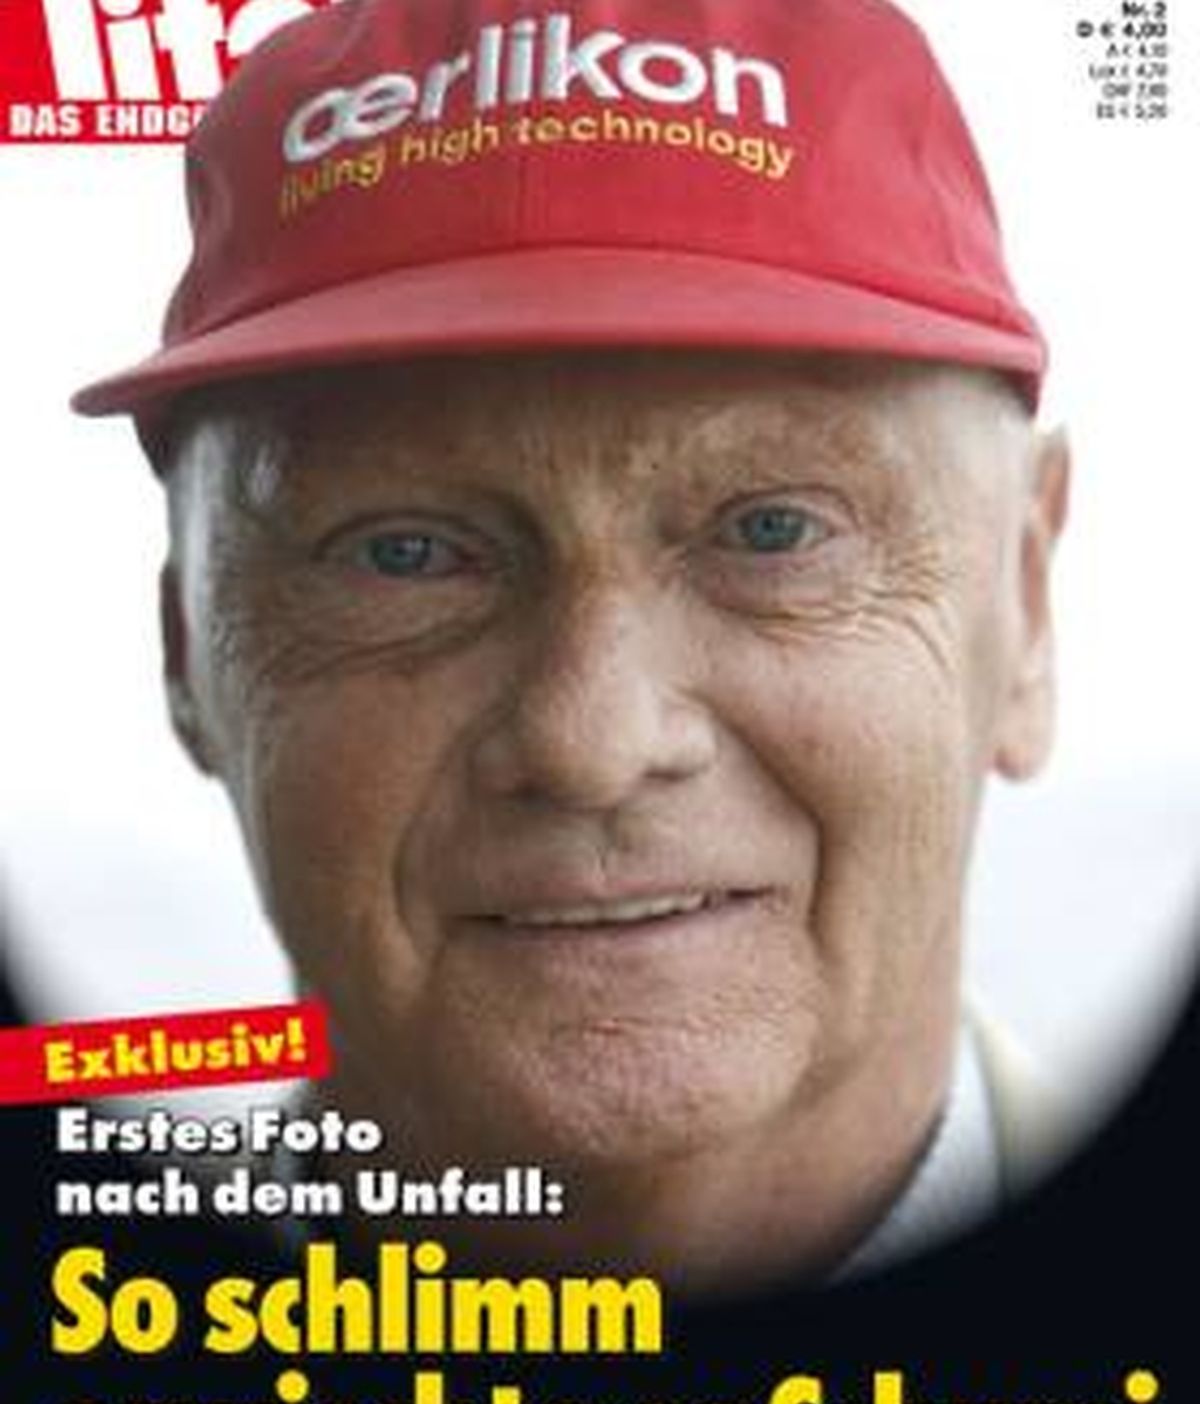 La revista alemana Titanic bromea con el estado de salud de Schumacher